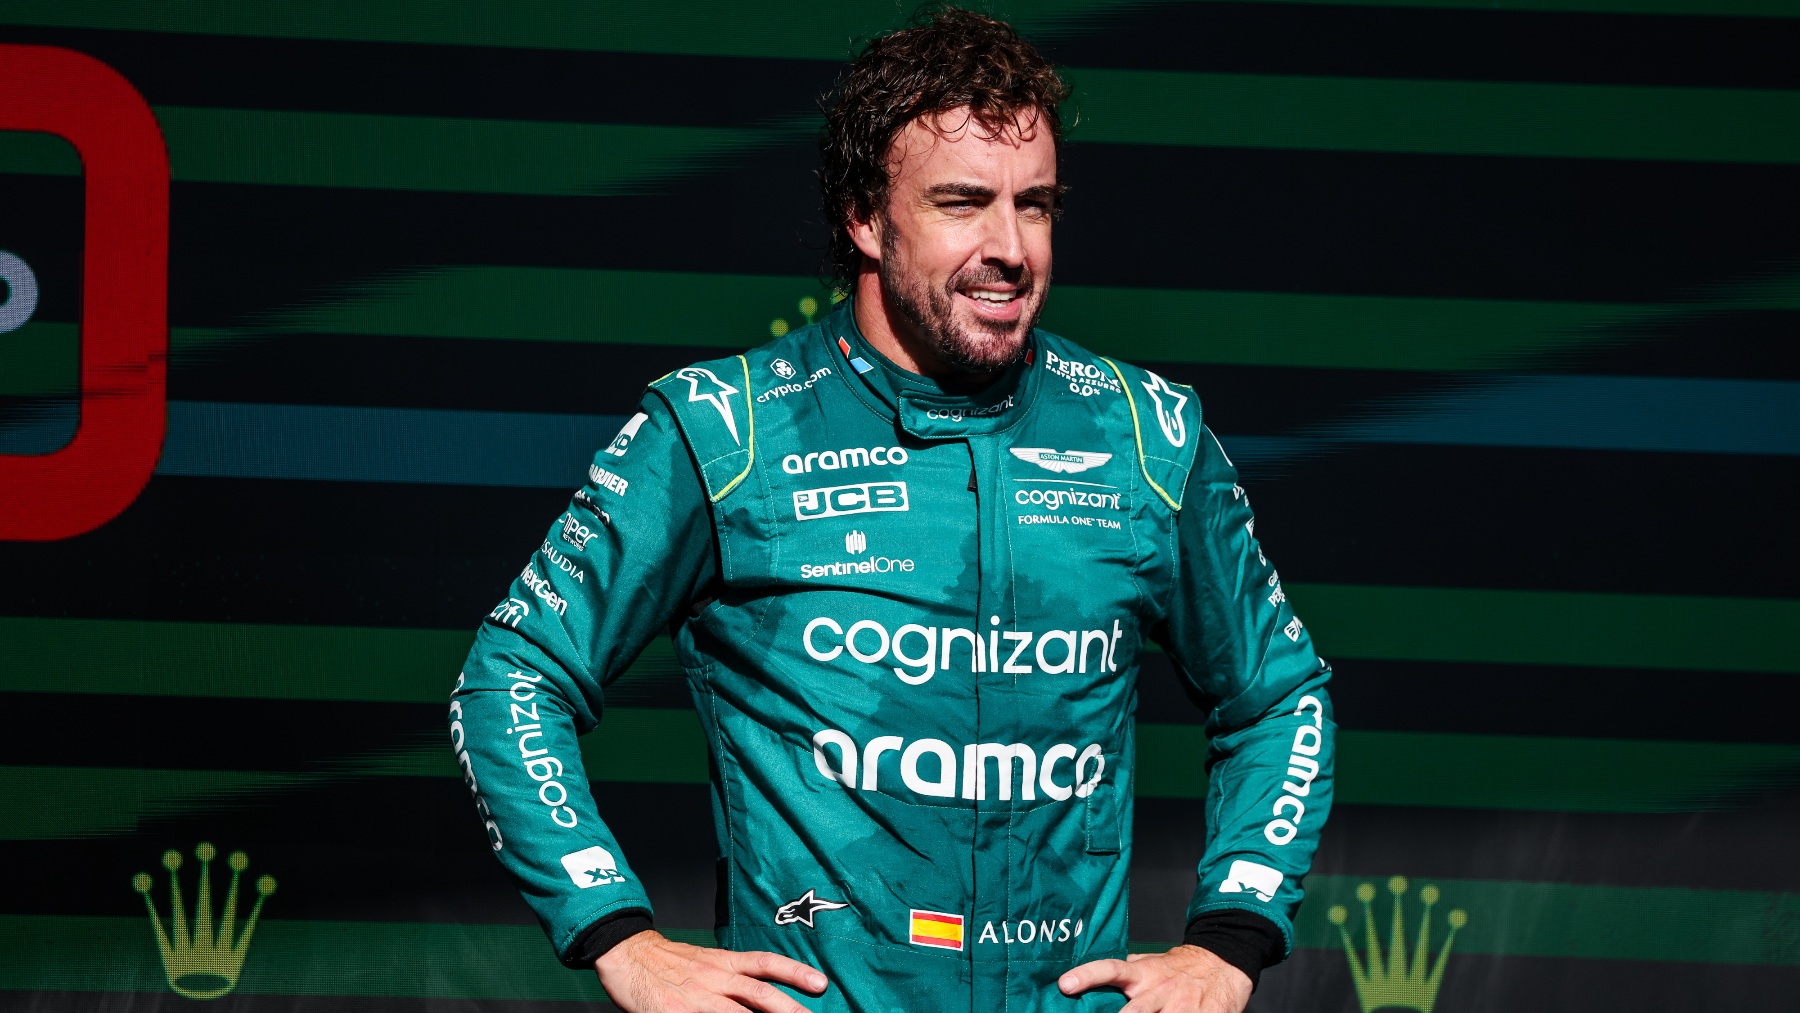 Fernando Alonso en el podio de Interlagos. (EuropaPress)